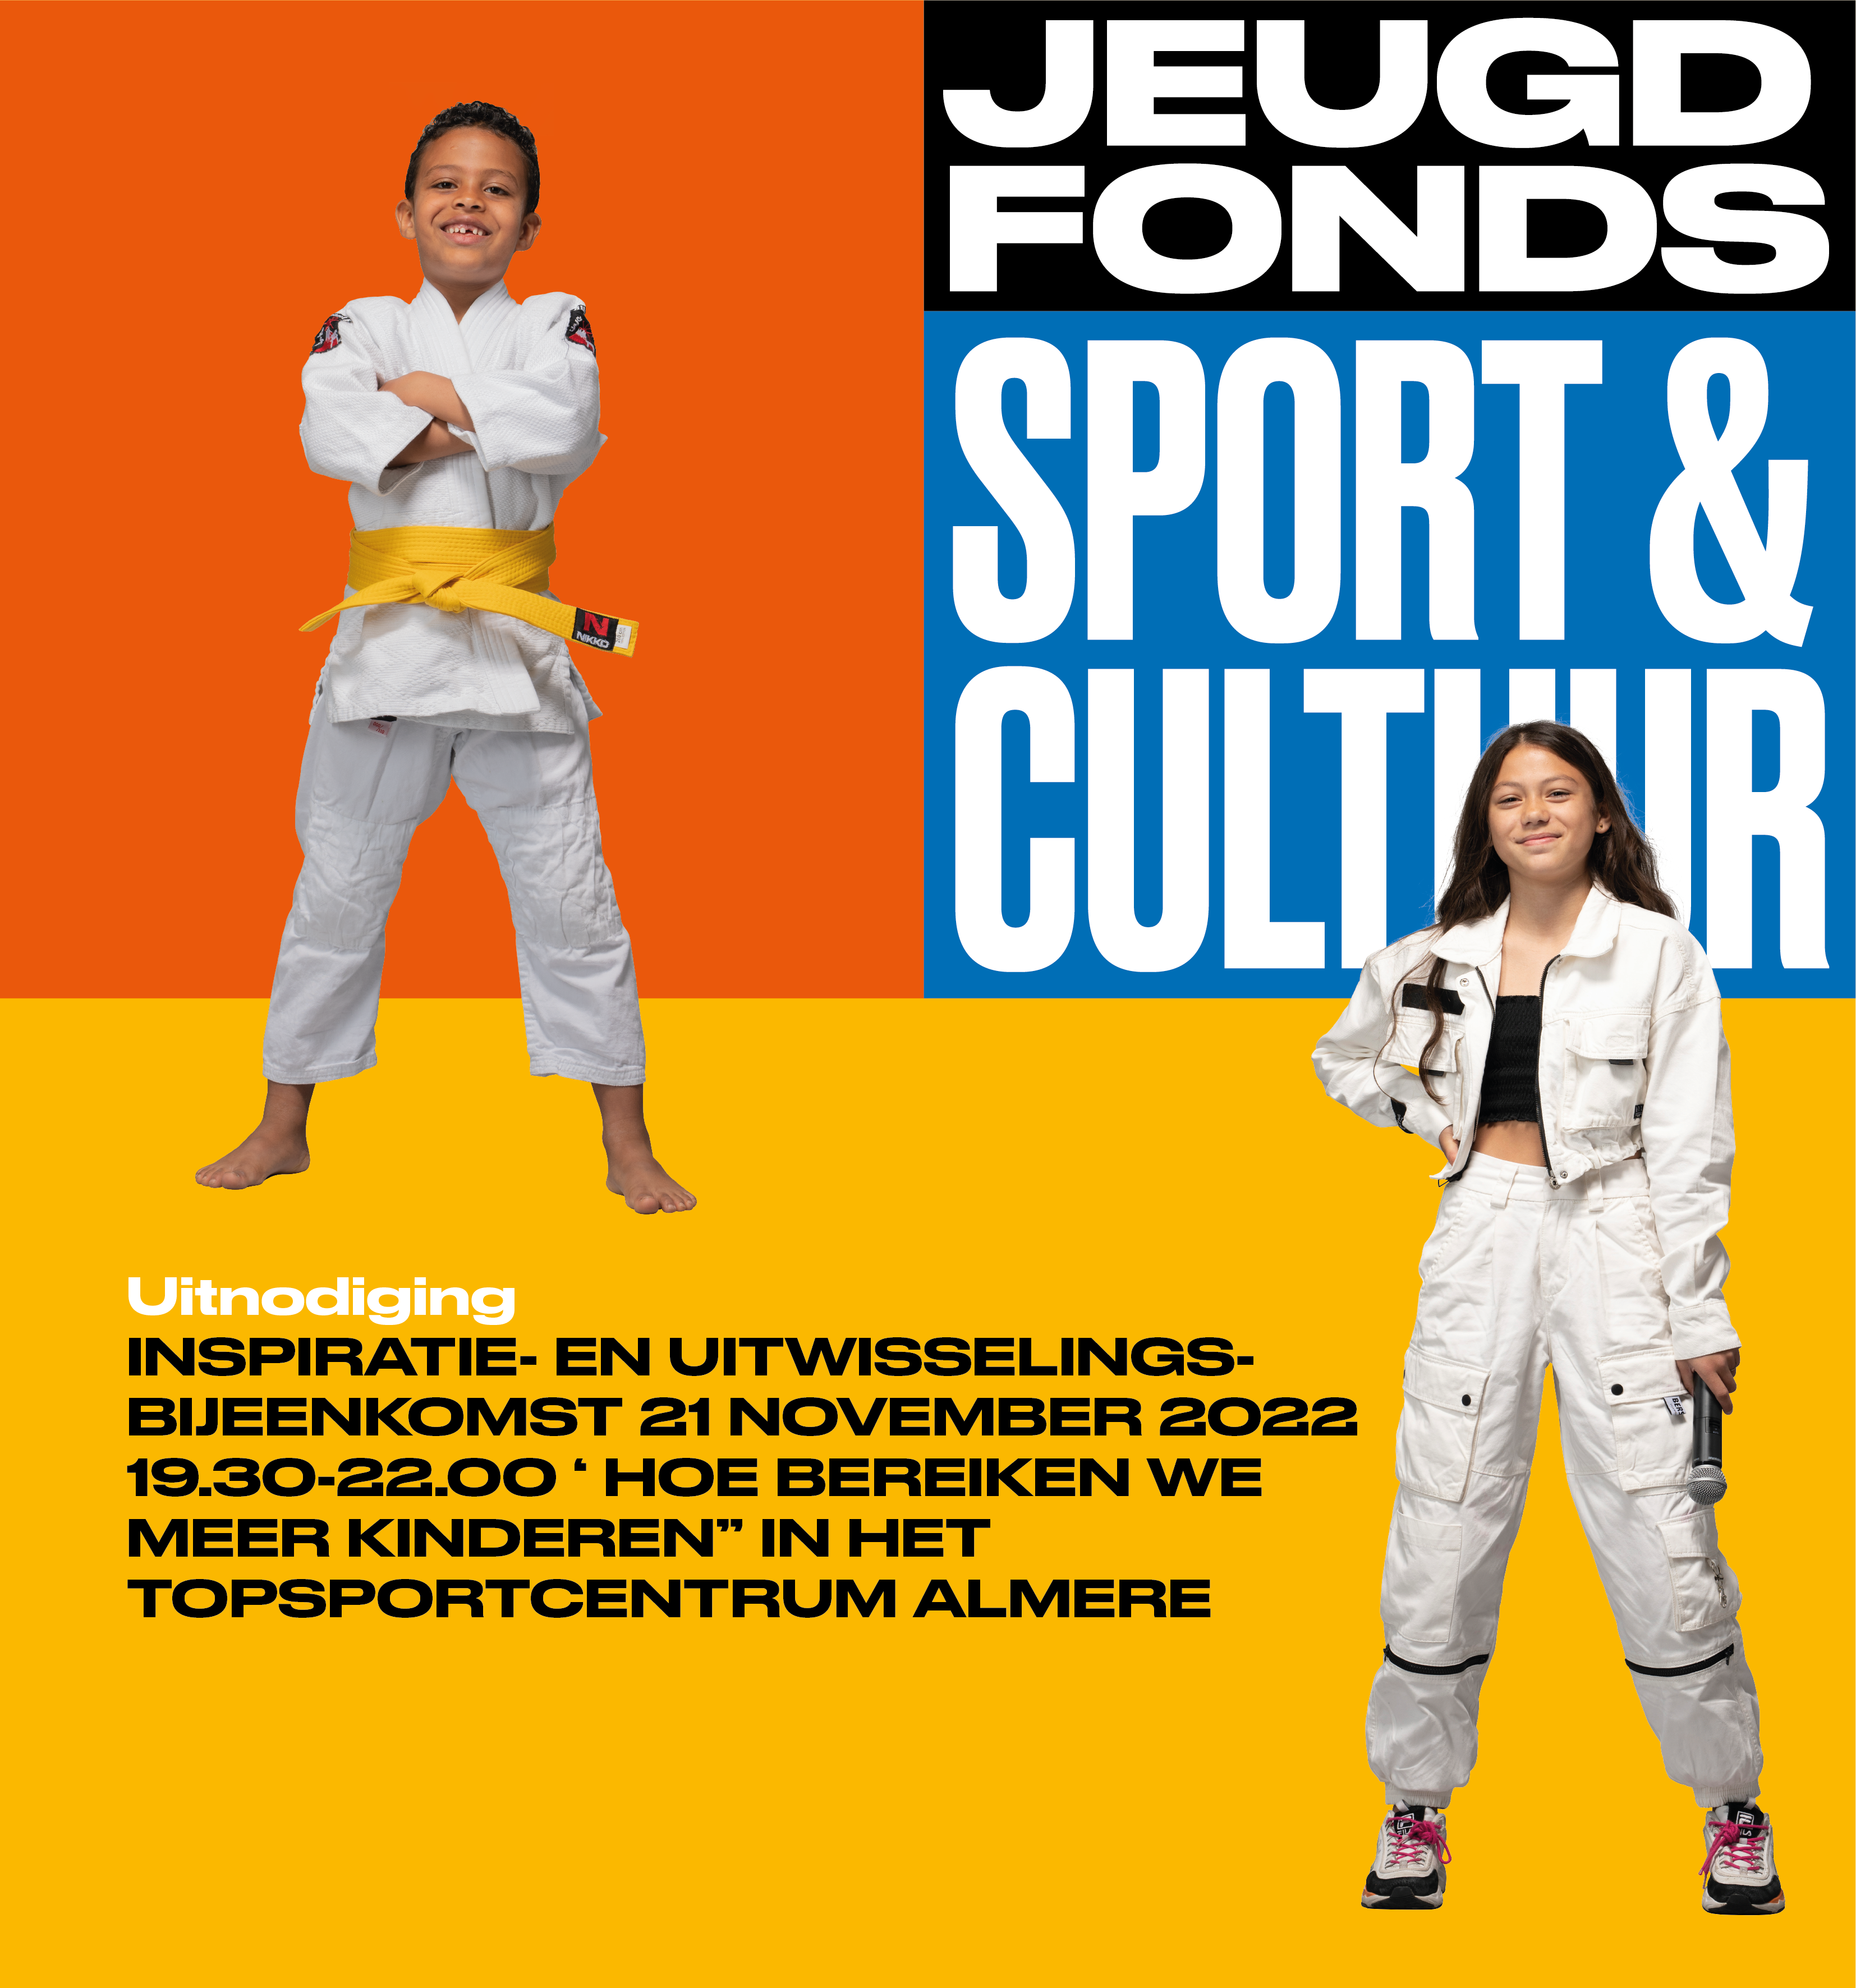 Jeugdfonds Sport & Cultuur Alle kinderen doen mee! | Jeugdfonds Sport